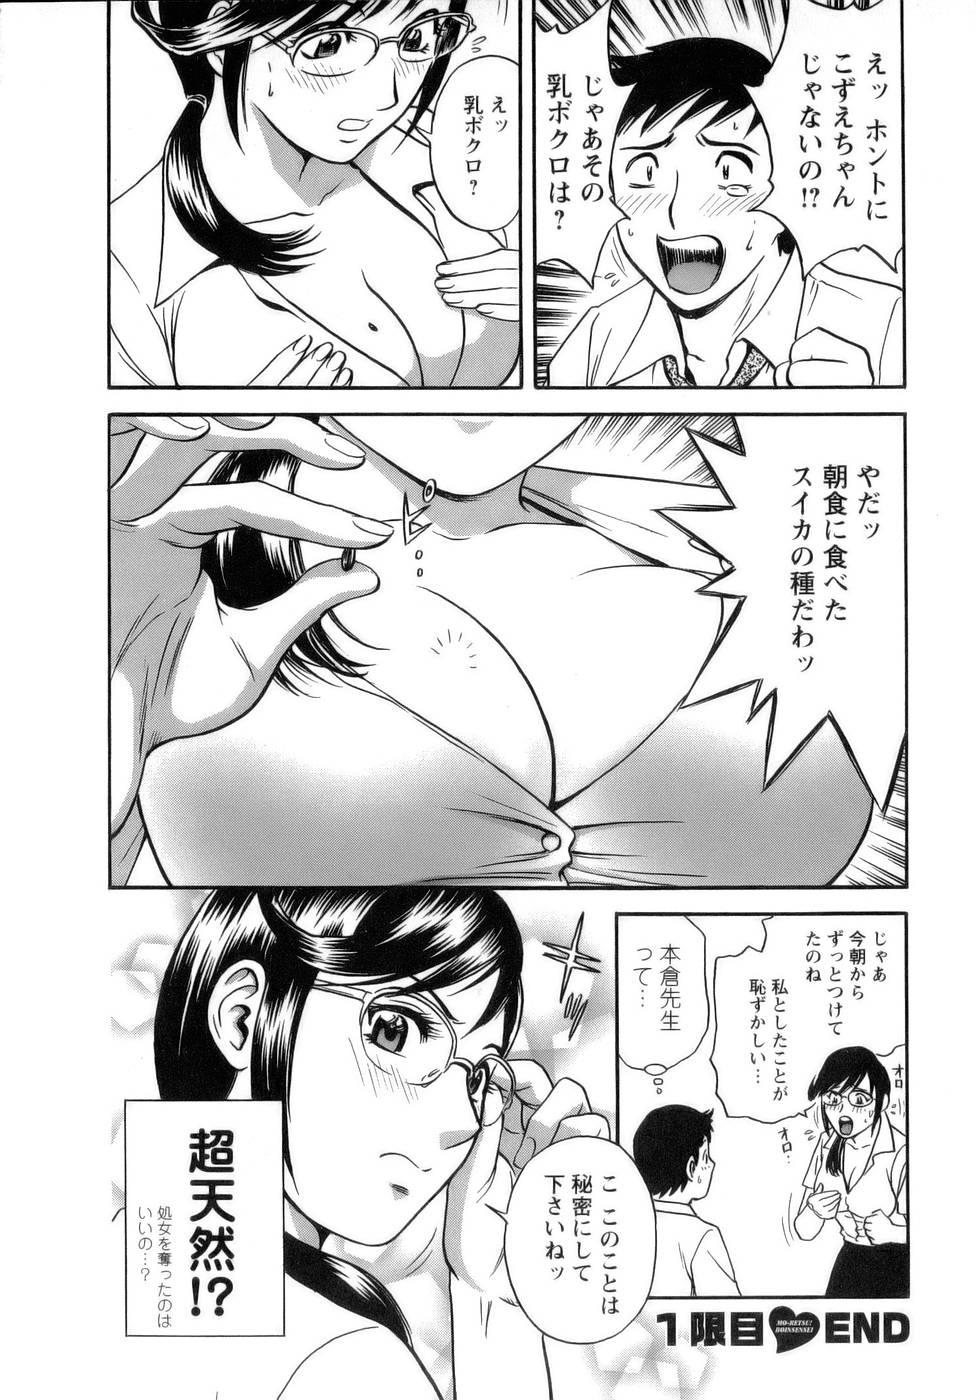 [Hidemaru] Mo-Retsu! Boin Sensei (Boing Boing Teacher) Vol.1 28